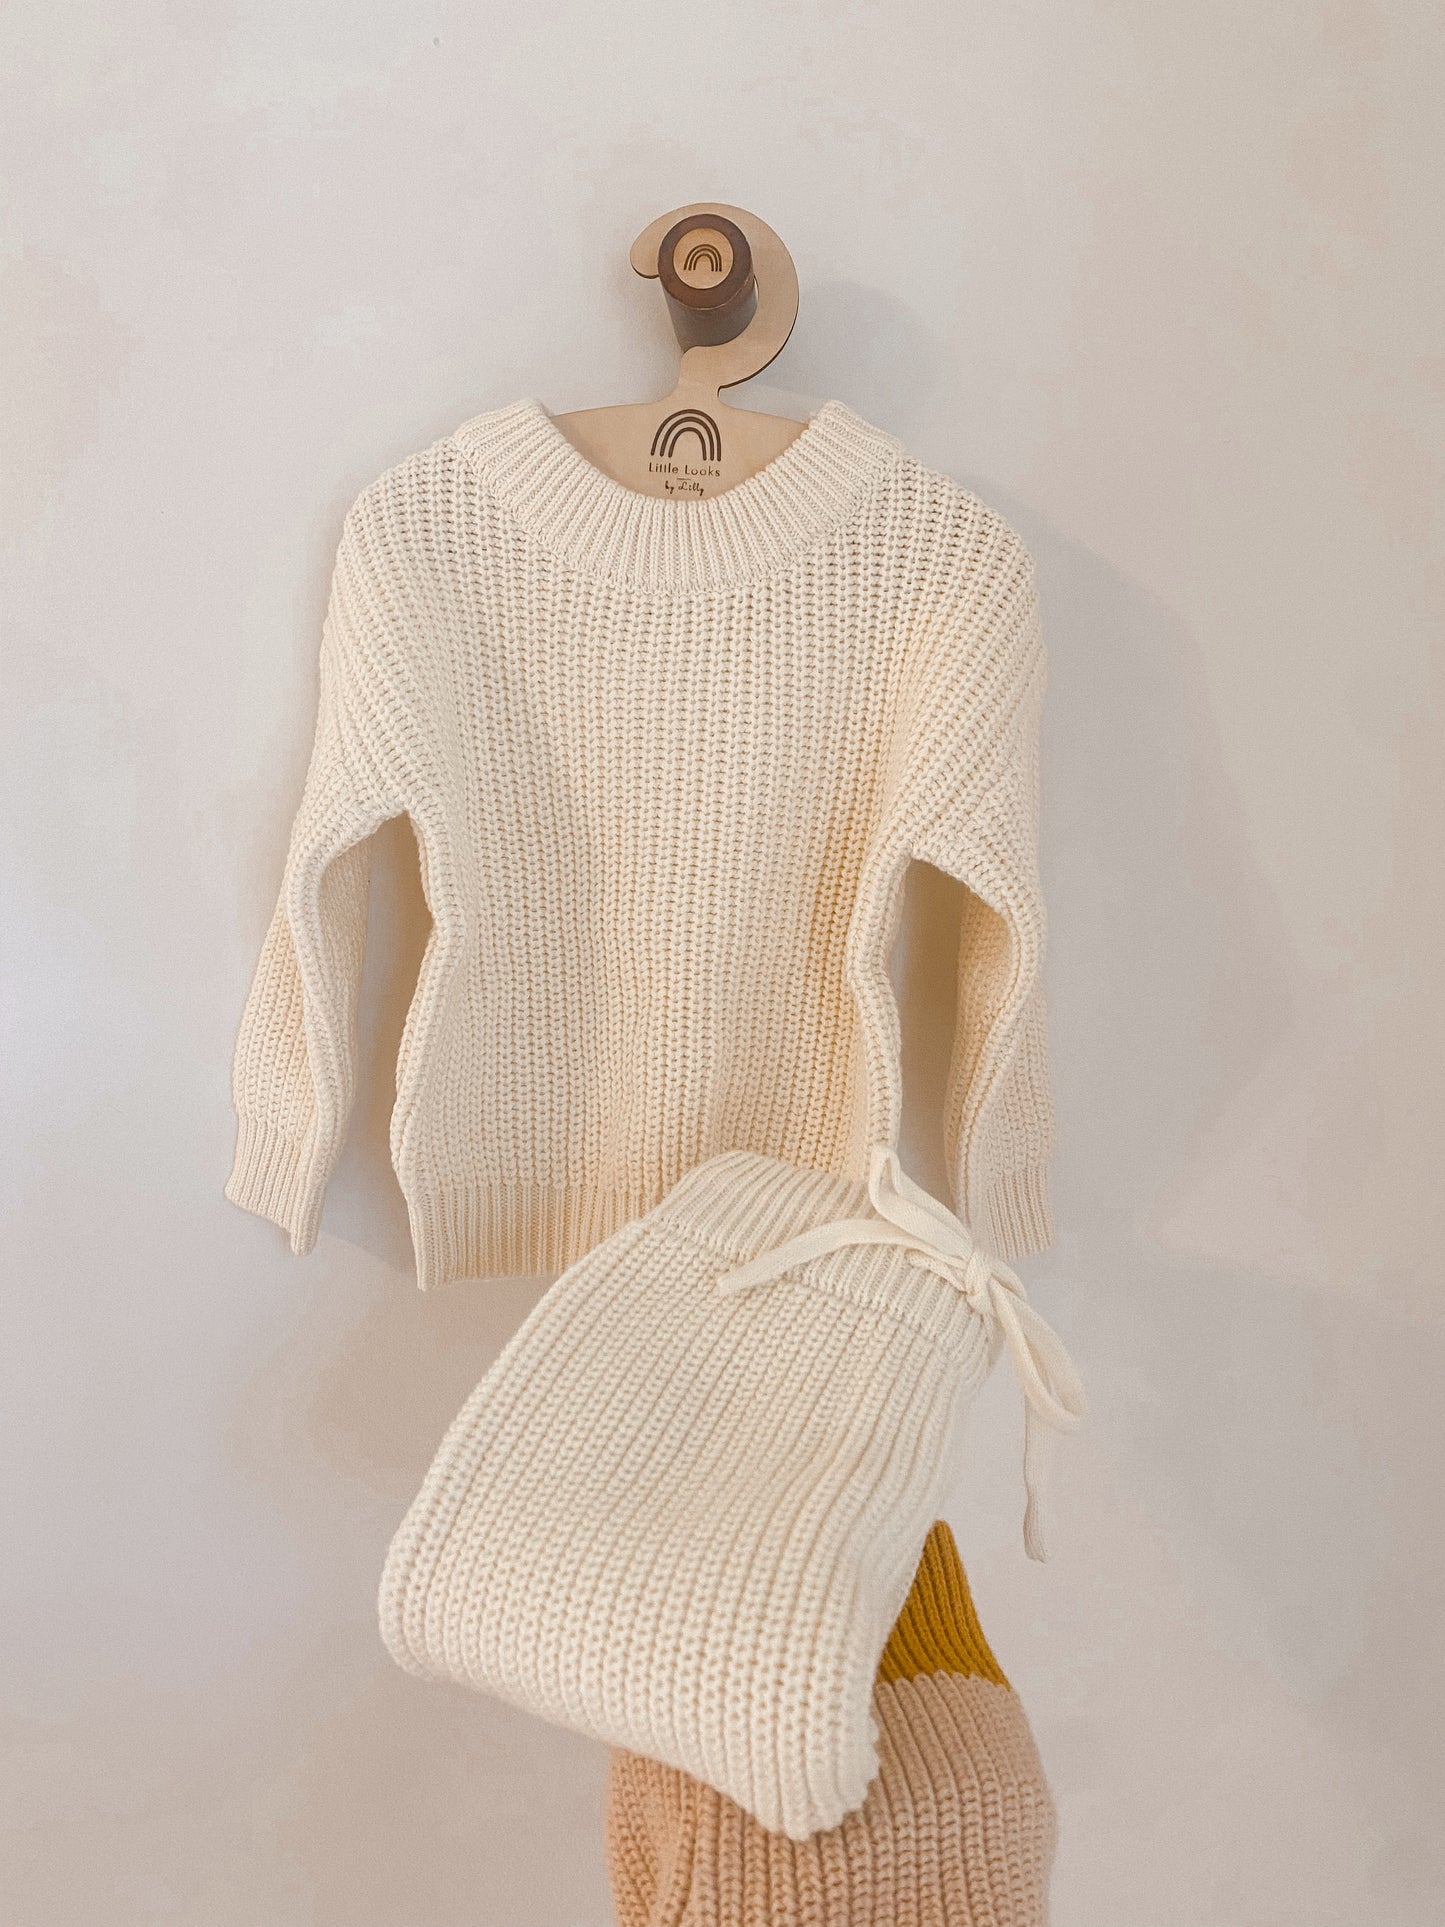 Knit Newborn Set: Marshmallow Fluff